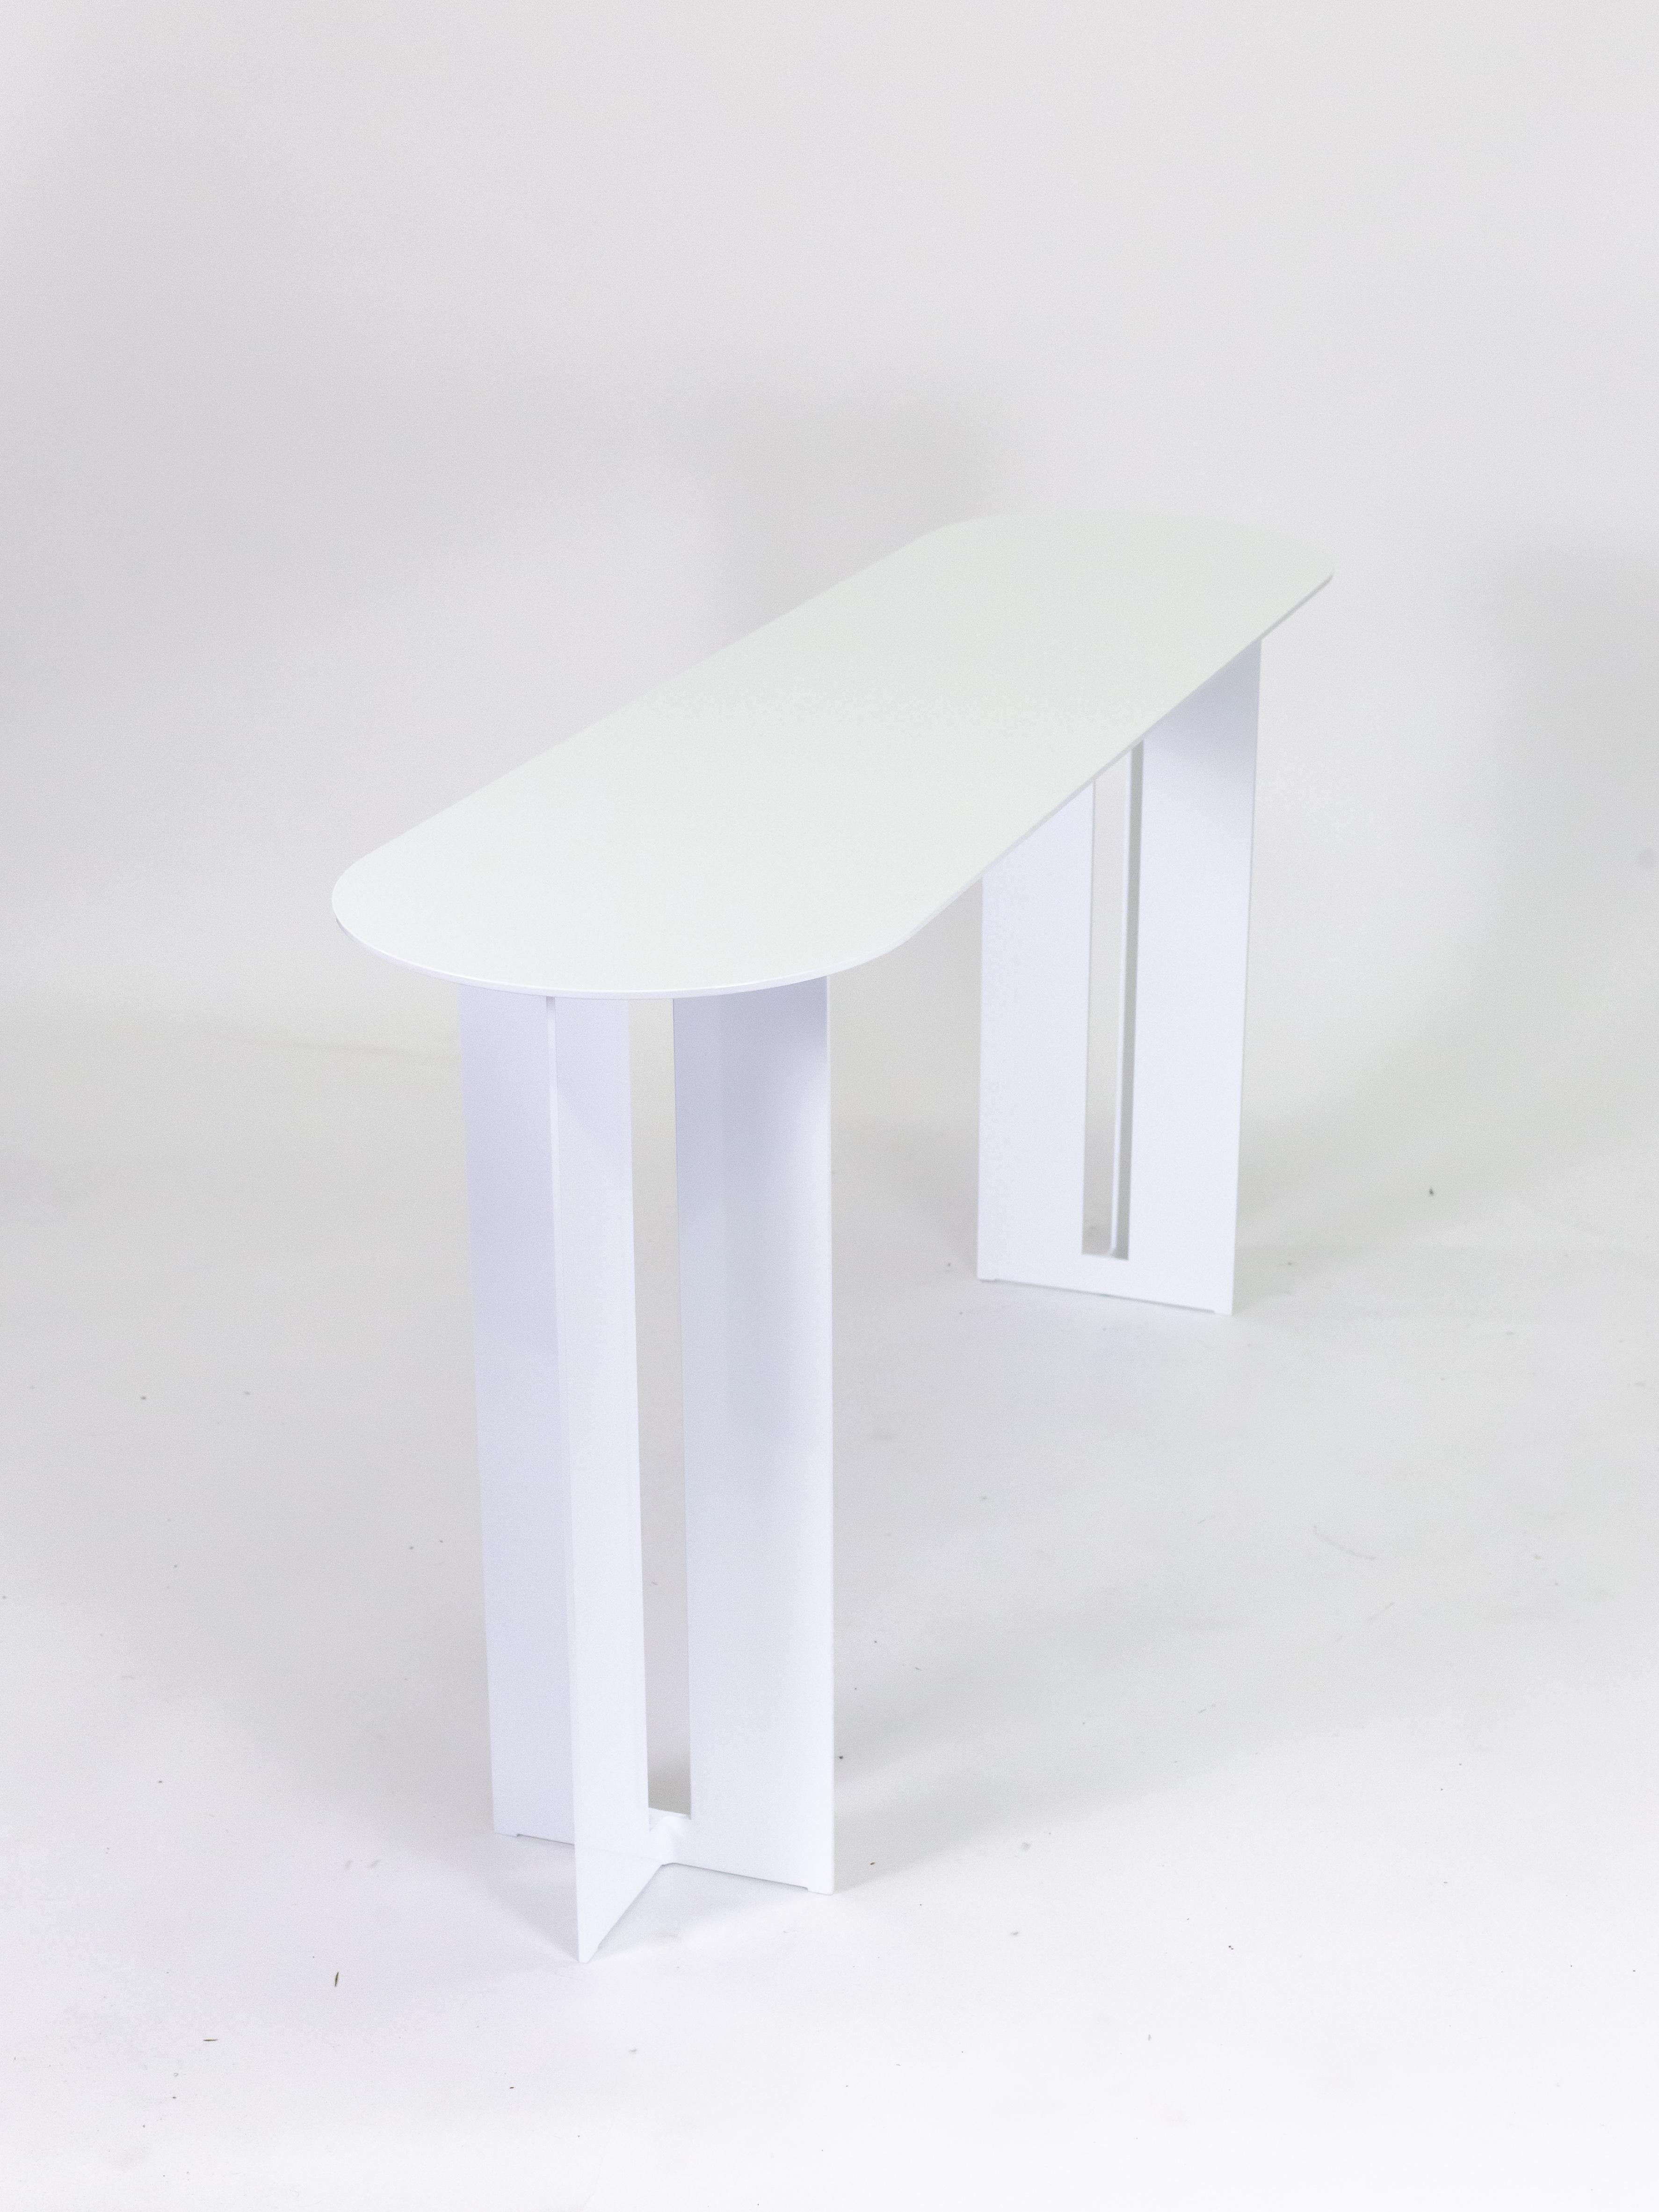 La table console Mers est fabriquée en aluminium massif et peut être utilisée à l'intérieur comme à l'extérieur. La forme s'inspire de l'utilitarisme simple des bateaux de pêche en aluminium de la côte ouest.

Montré en aluminium avec finition